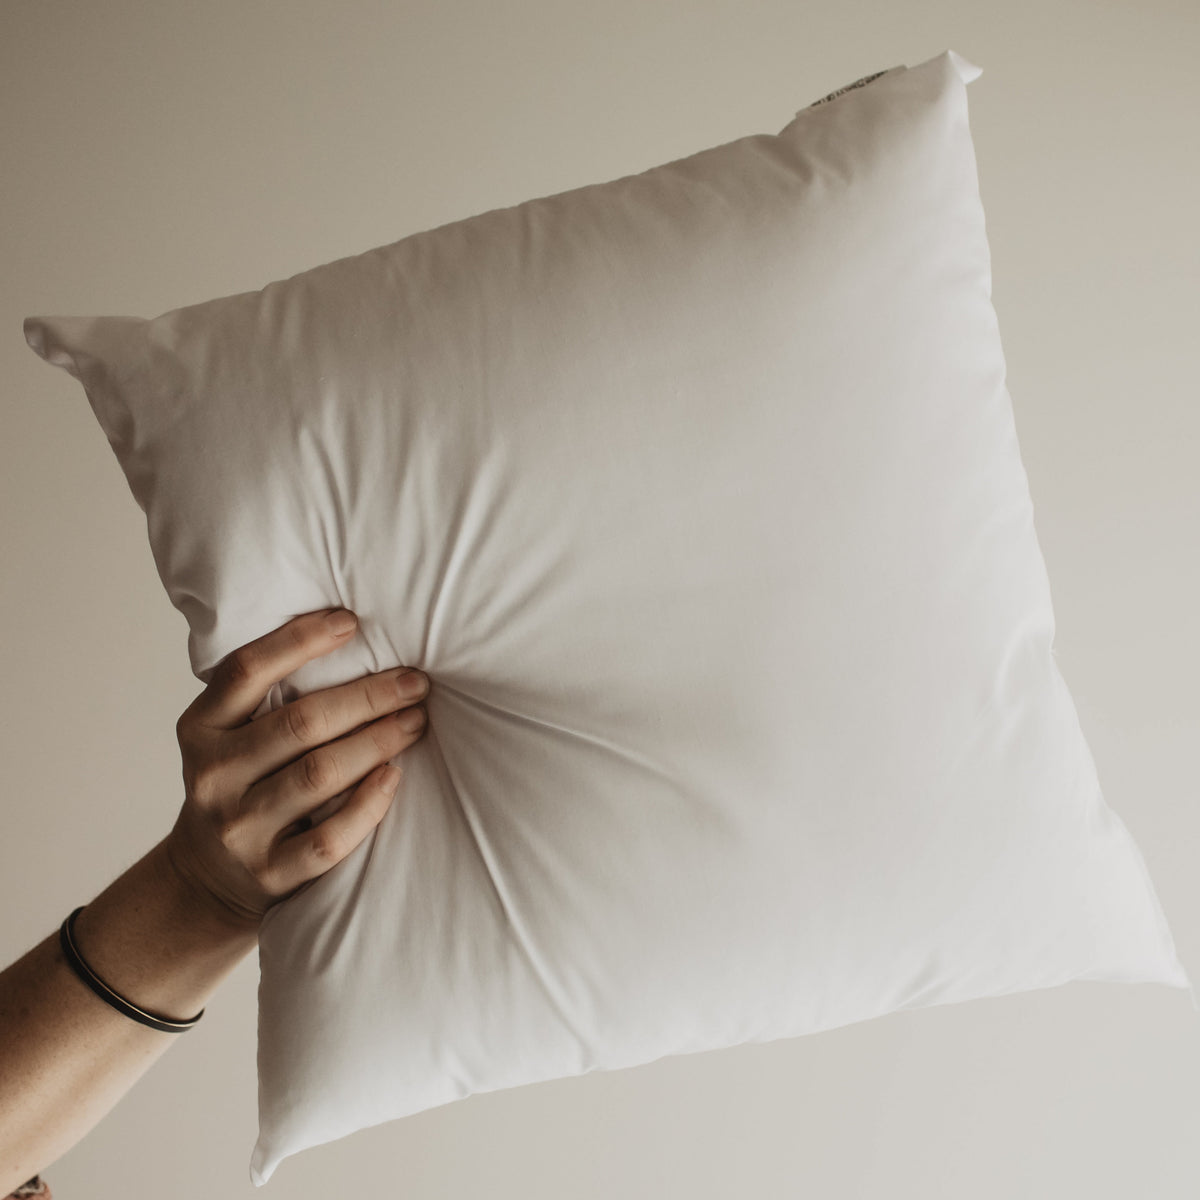 Fennco Styles 100% Poly Fiber Pillow Filler Insert - White - Made in USA